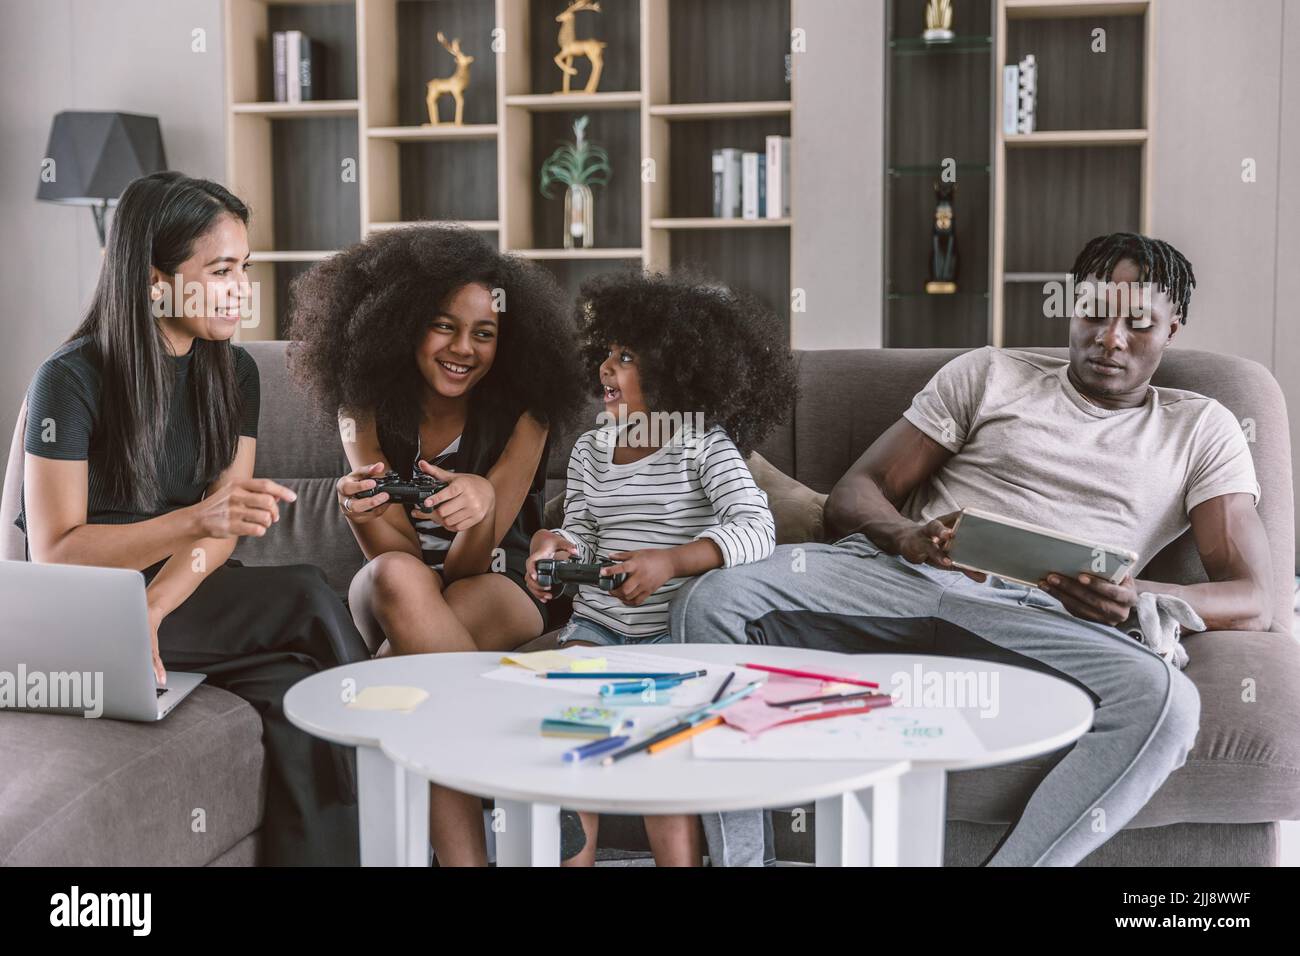 Détendez-vous dans une famille multiraciale joyeuse, parents avec deux enfants assis sur un canapé salon jouant à des jeux vidéo vacances de loisirs ensemble. Banque D'Images